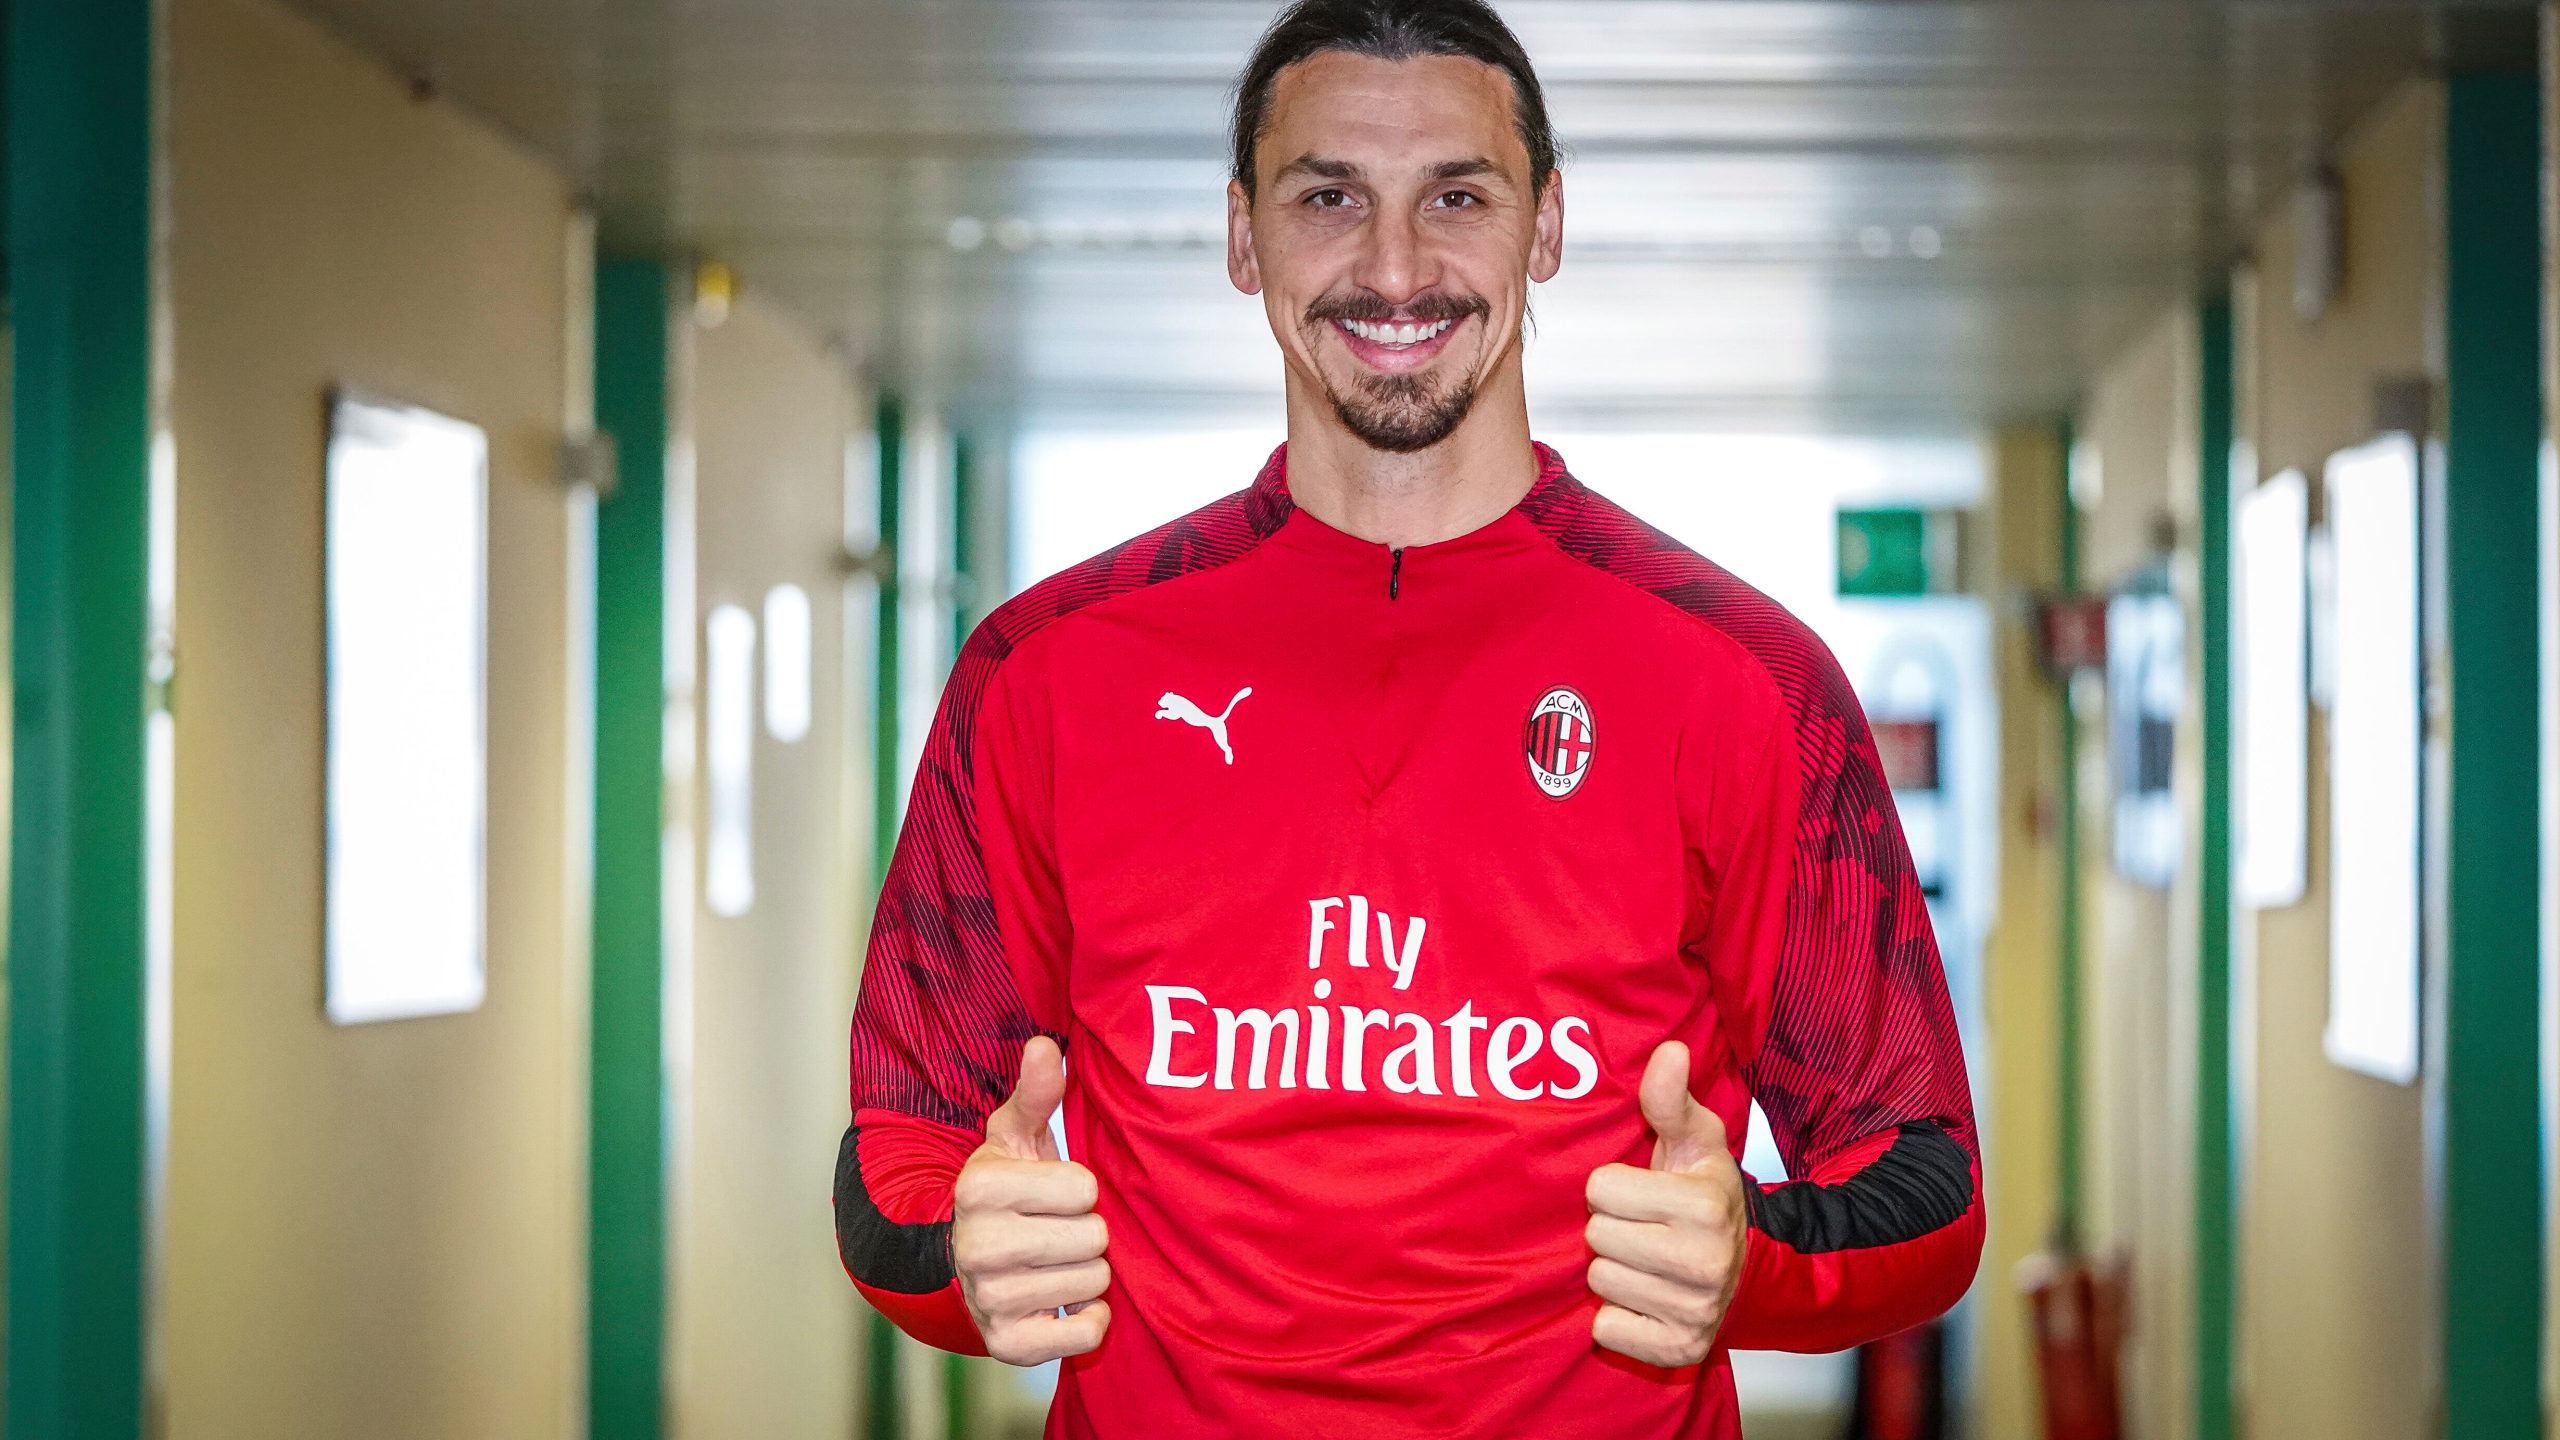 Le nouveau numéro pour Zlatan Ibrahimovic avec l’AC Milan